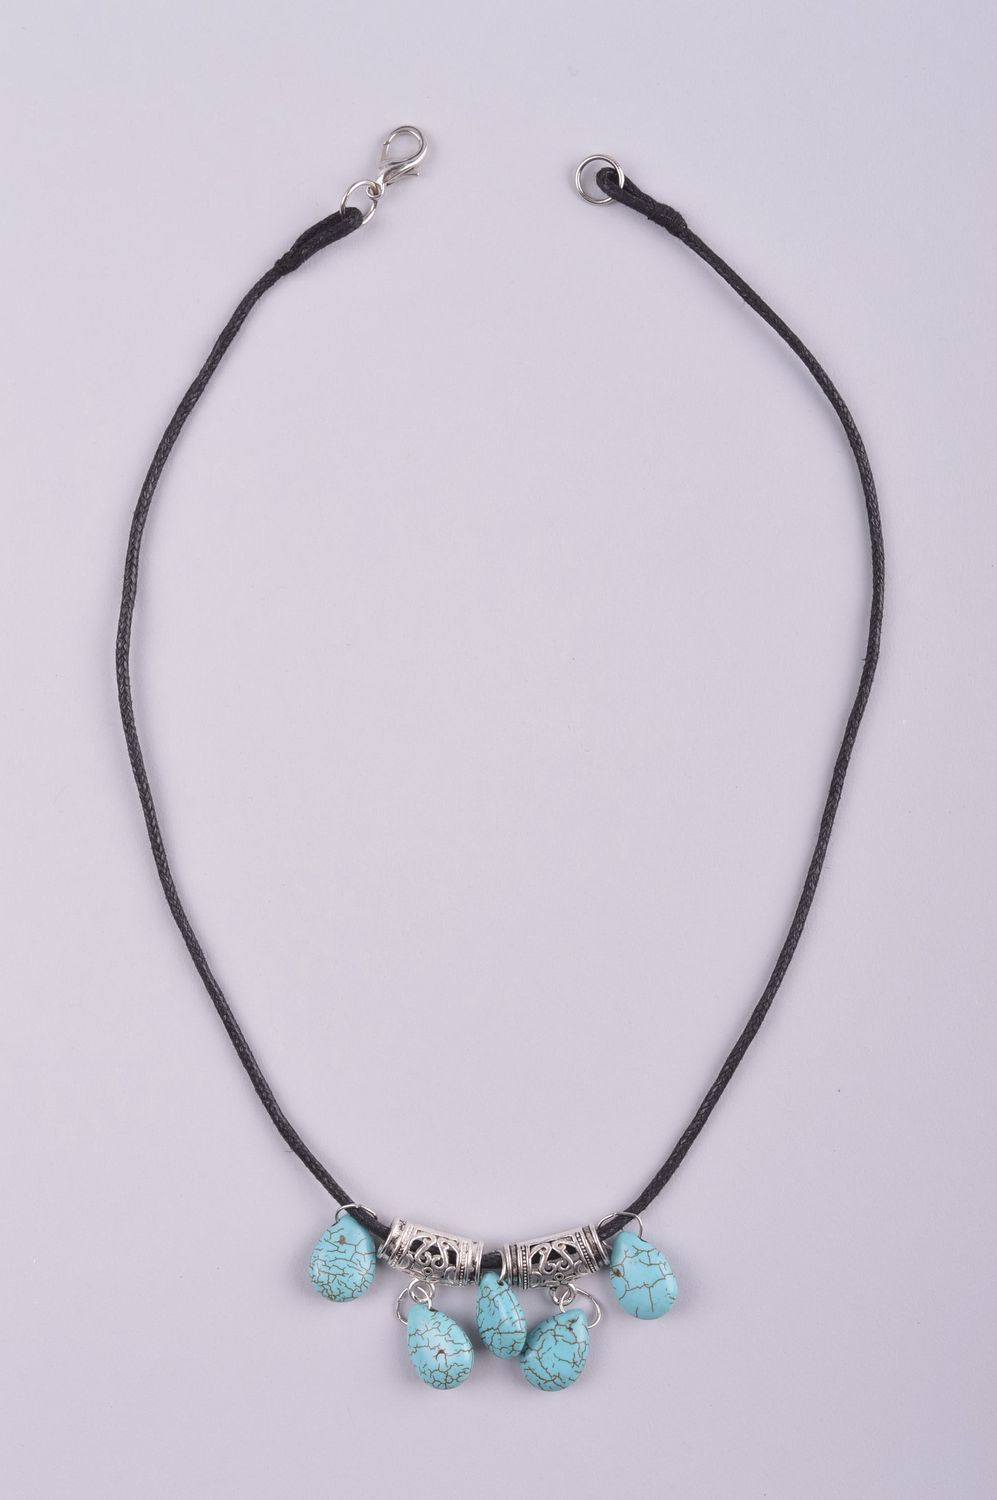 Handmade turquoise necklace elegant romantic necklace stylish accessory photo 4